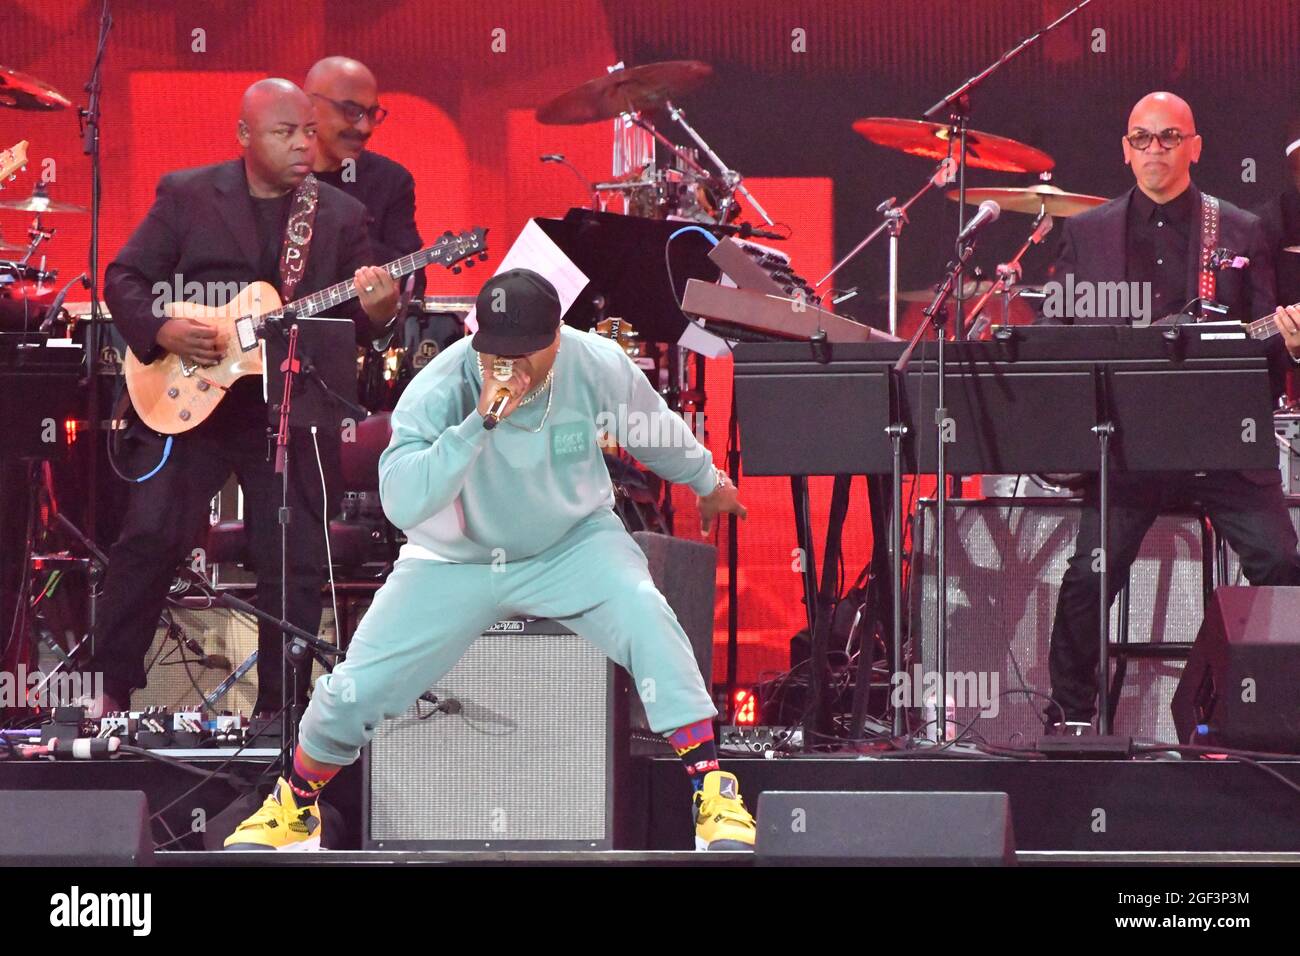 NEW YORK, NEW YORK - AGOSTO 21: LL Cool J si esibisce sul palco durante We Love NYC: The Homecoming Concert prodotto da NYC, Clive Davis e Live Nation il 21 agosto 2021 a New York City. (Foto di John Atashian) Foto Stock